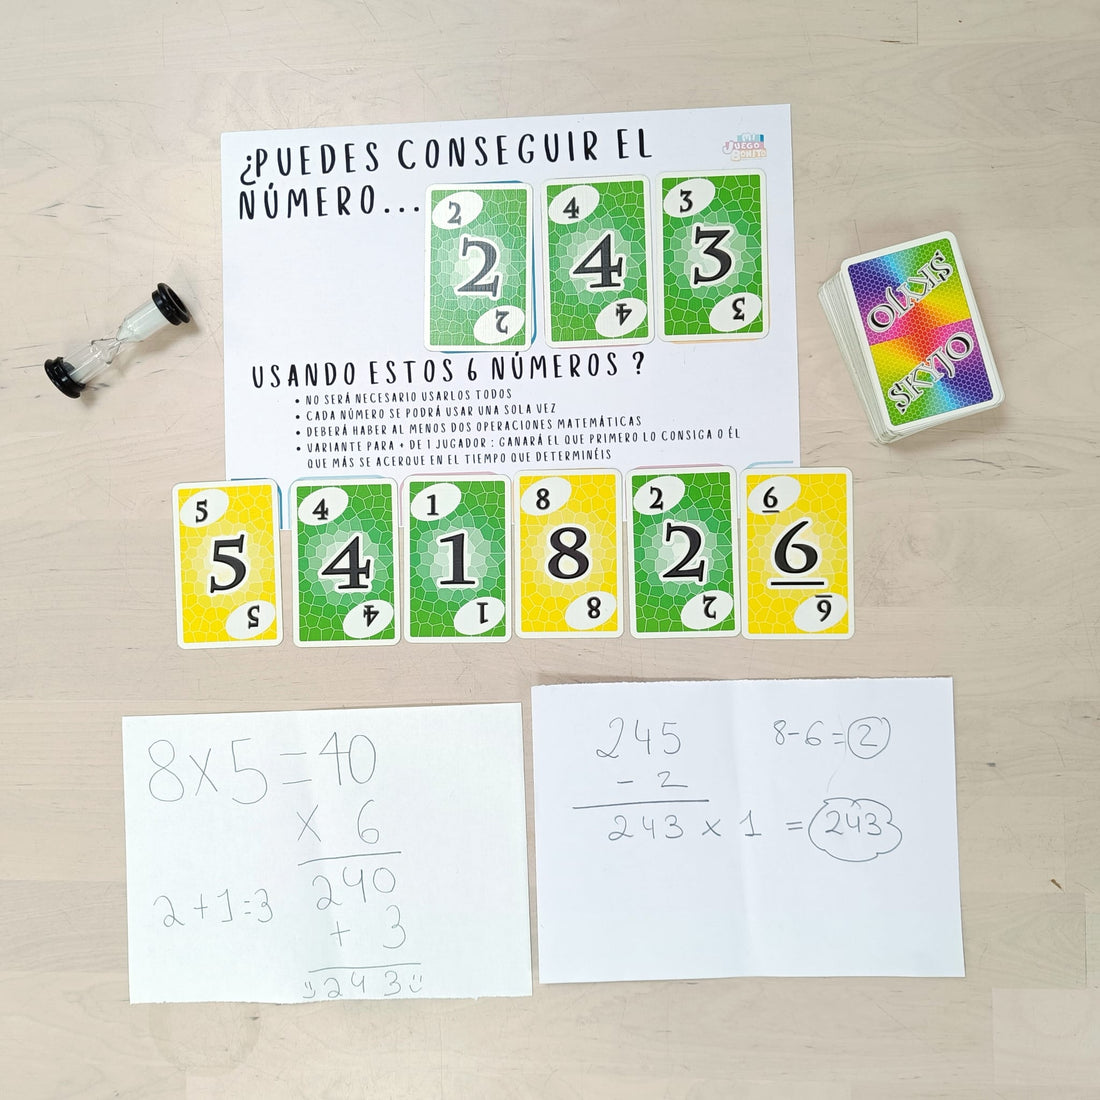 Adaptamos el juego de mesa Skyjo para practicar el cálculo mental jugando Hoy te traemos una adaptación para el juego Skyjo de @ludilojuegos con la que poder jugar, practicar y divertirnos con el cálculo mental. Sumas, restas, multiplicaciones, divisiones